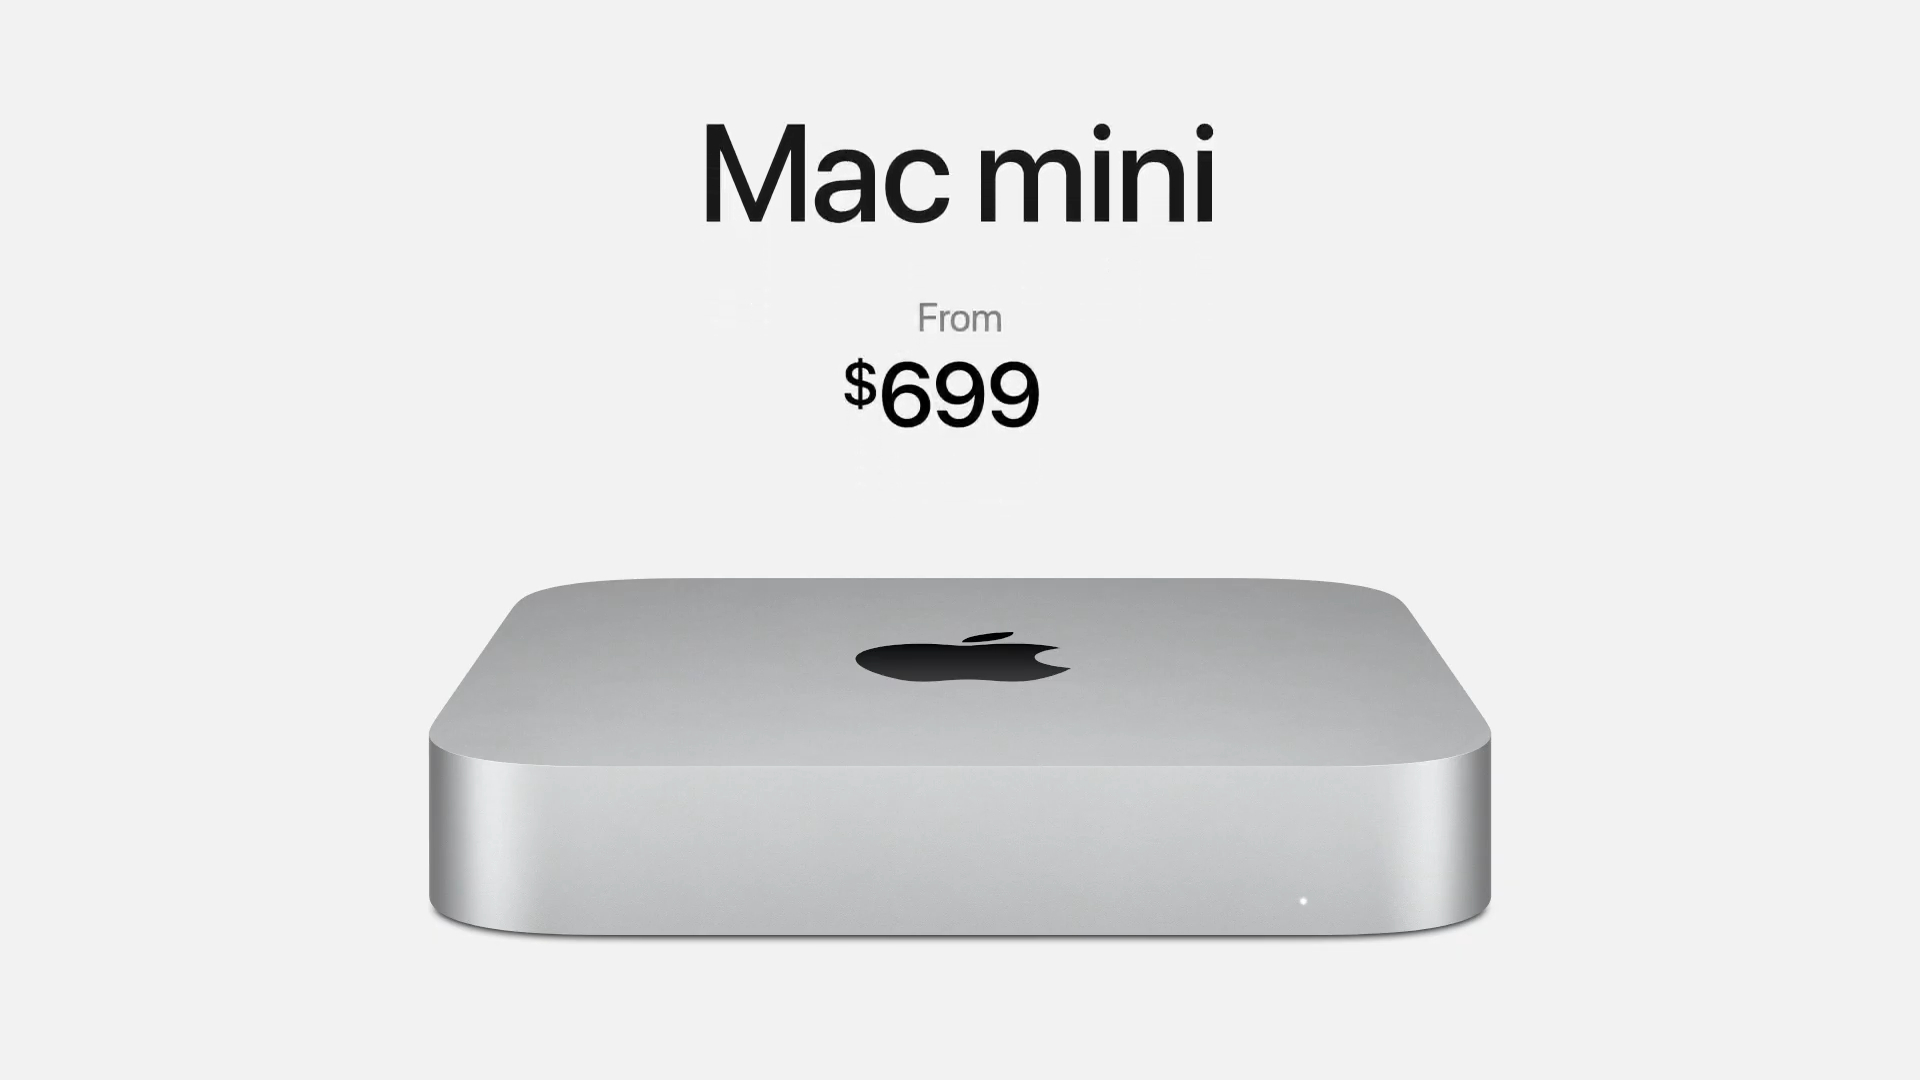 Apple ARM tabanlı M1 işlemcili ilk Mac mini modelini duyurdu